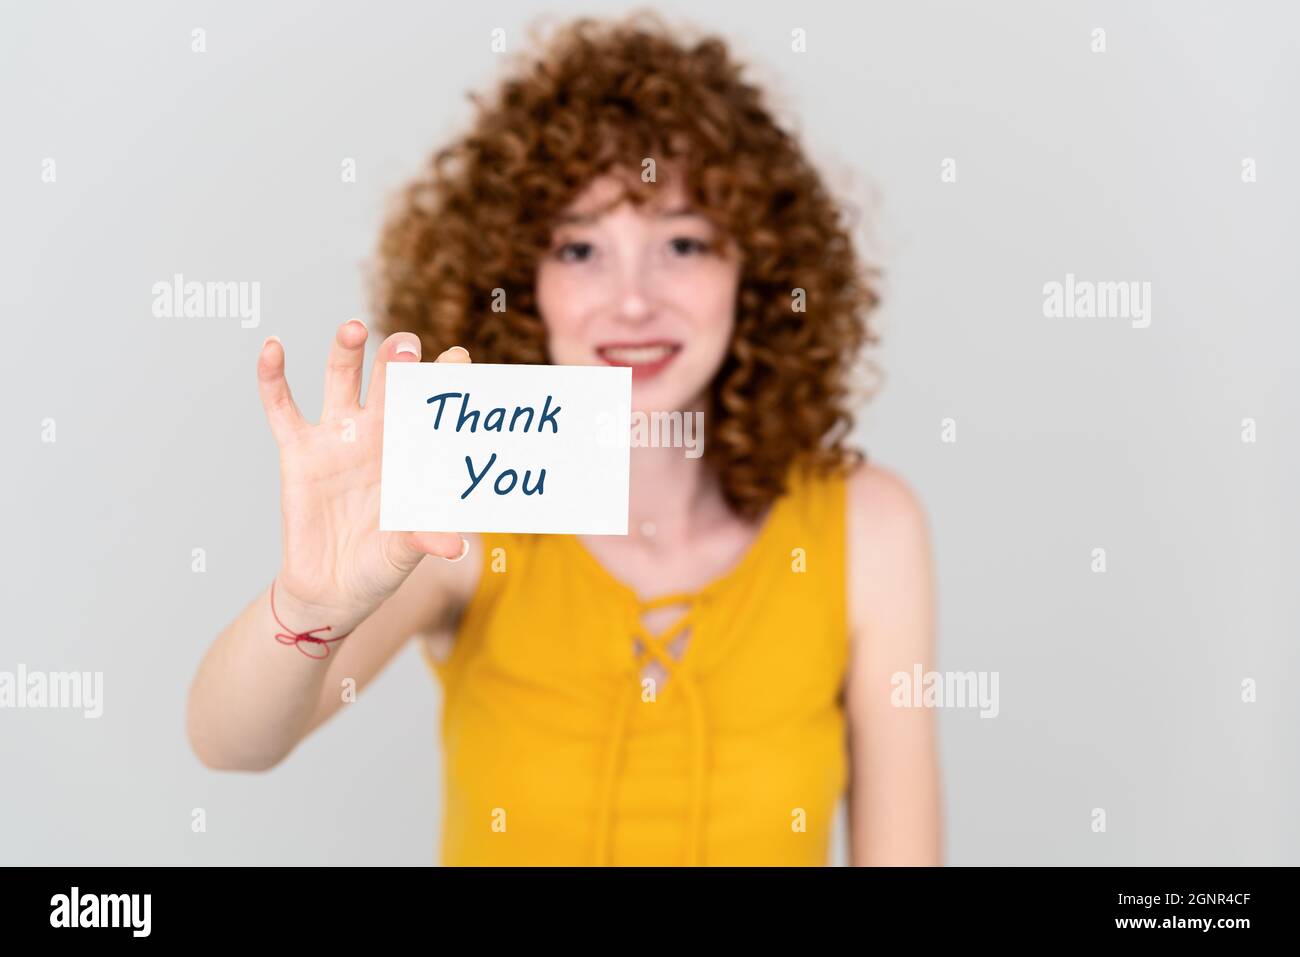 Eine junge Frau mit rotem Haar hält ein Papier mit einer Dankesnote. Geräuschloses Kommunikationskonzept. Hochwertige Fotos Stockfoto